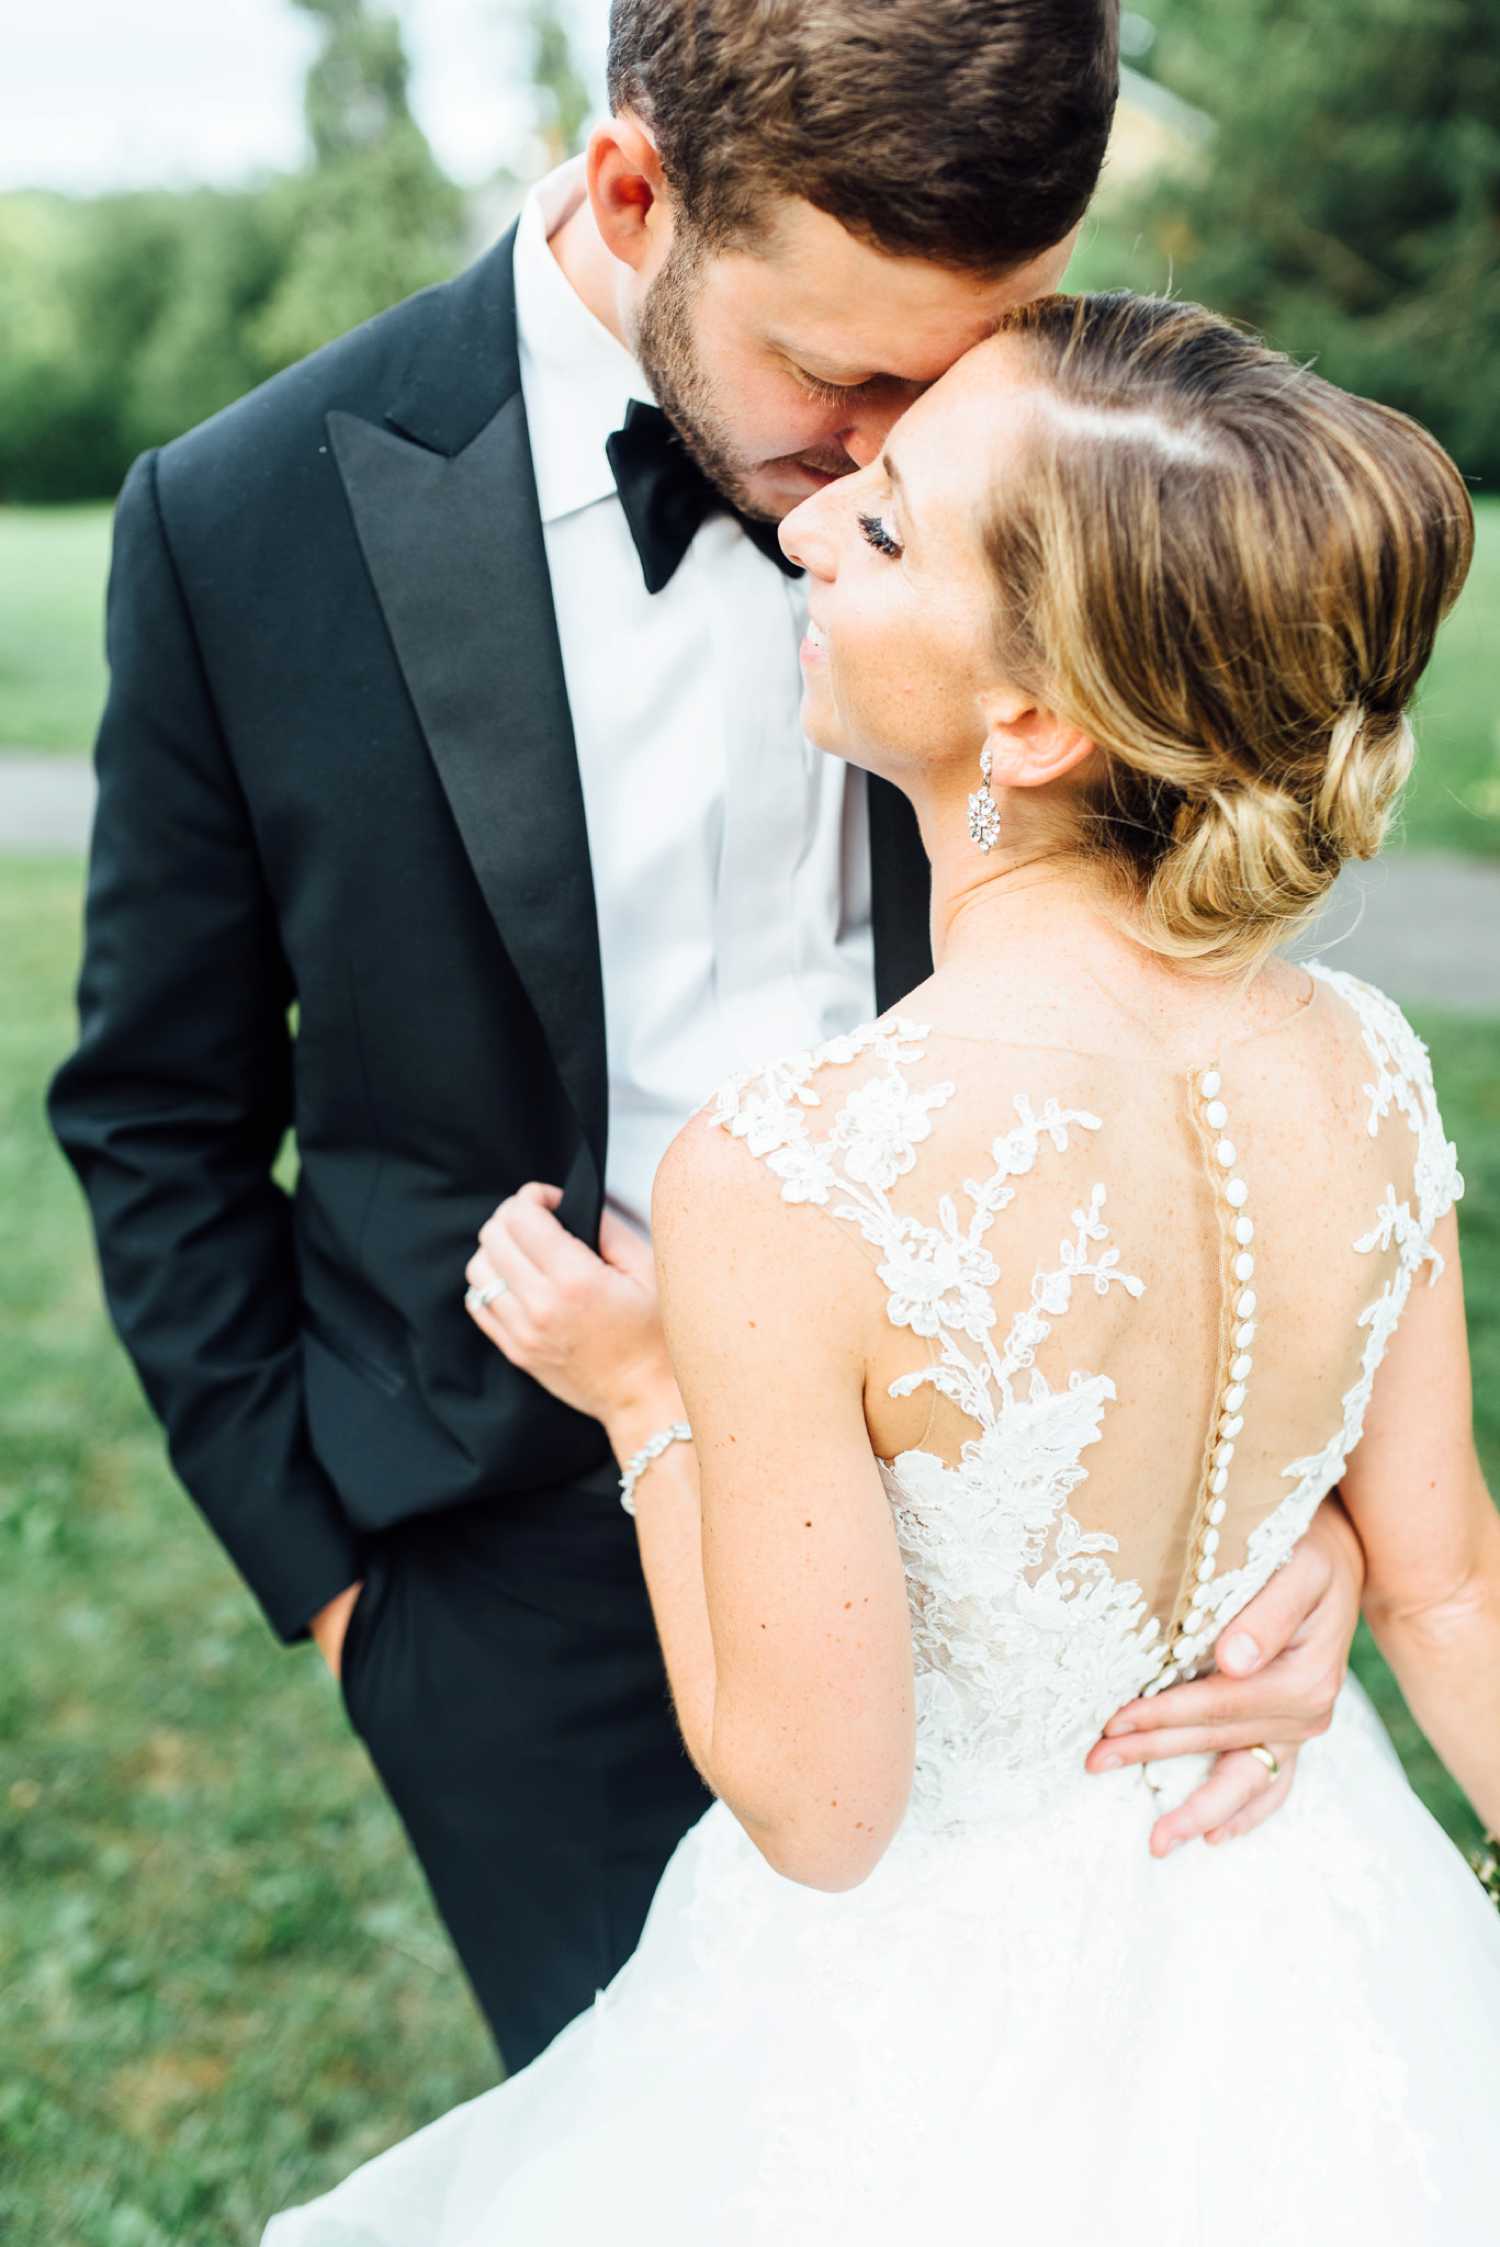 Rachel + Jeff - Tyler Arboretum Wedding - Philadelphia Wedding Photographer - Alison Dunn Photography photo